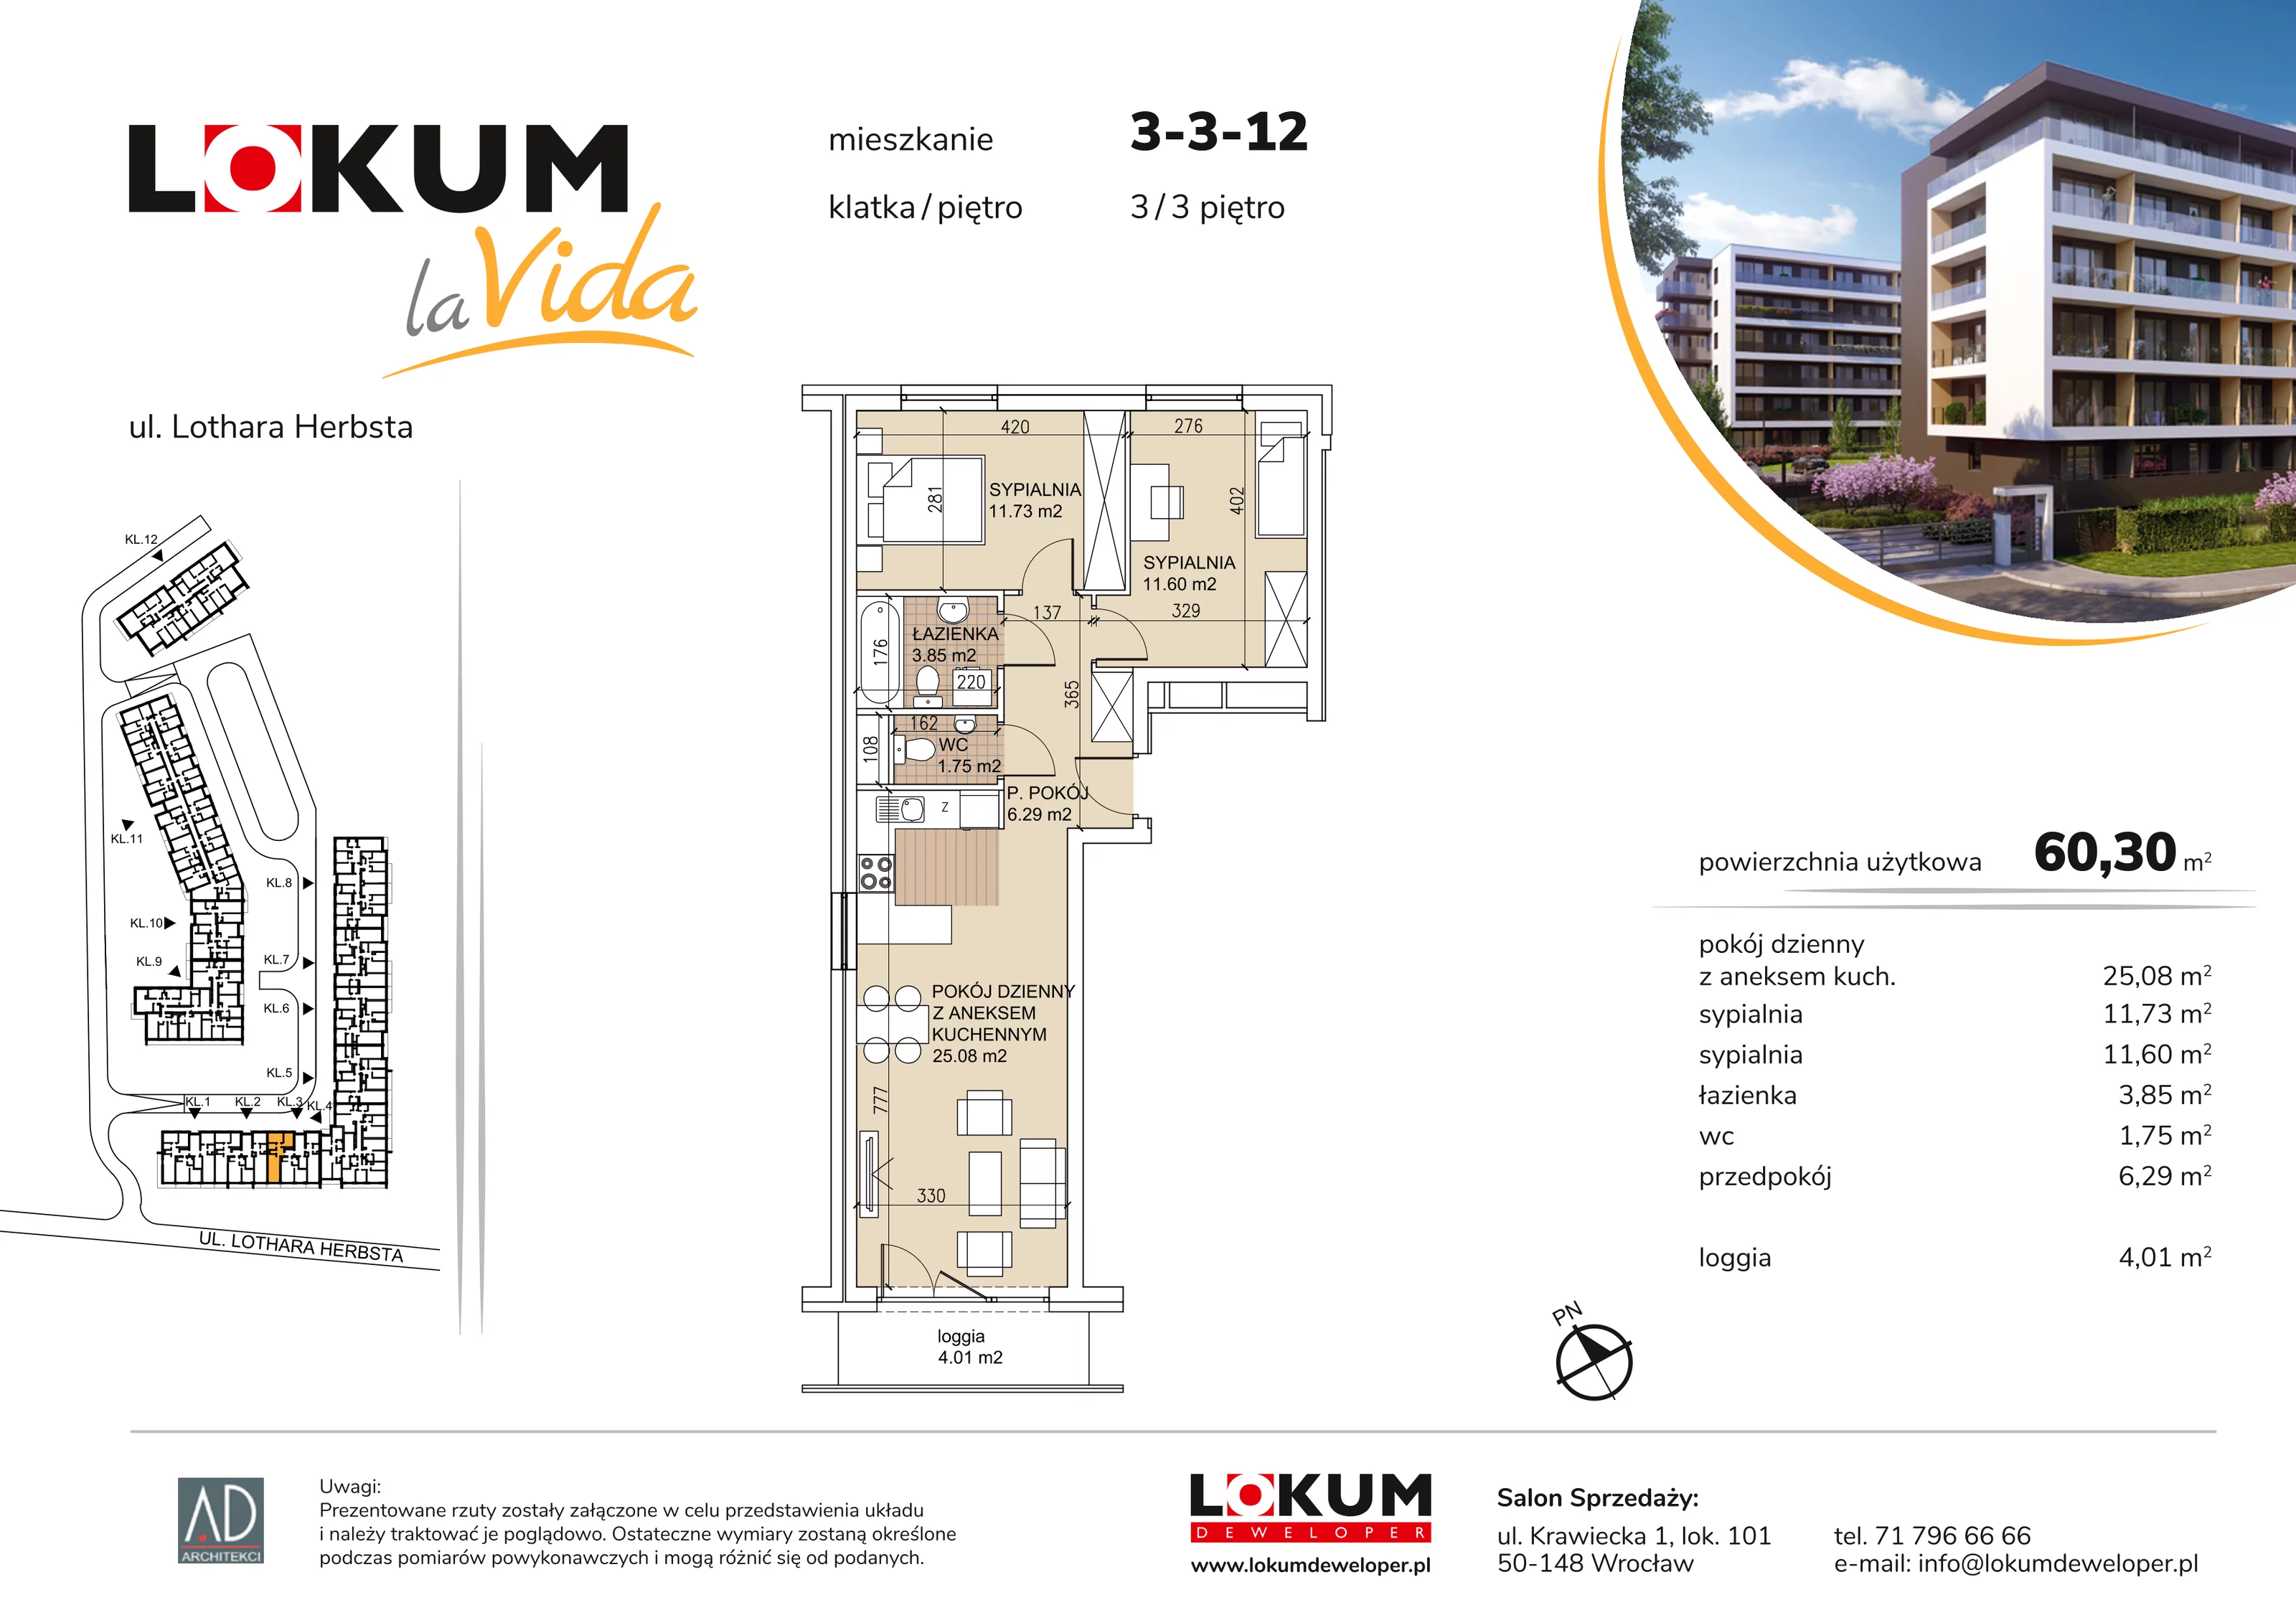 Mieszkanie 60,30 m², piętro 3, oferta nr 3-3-12, Lokum la Vida, Wrocław, Sołtysowice, ul. Lothara Herbsta